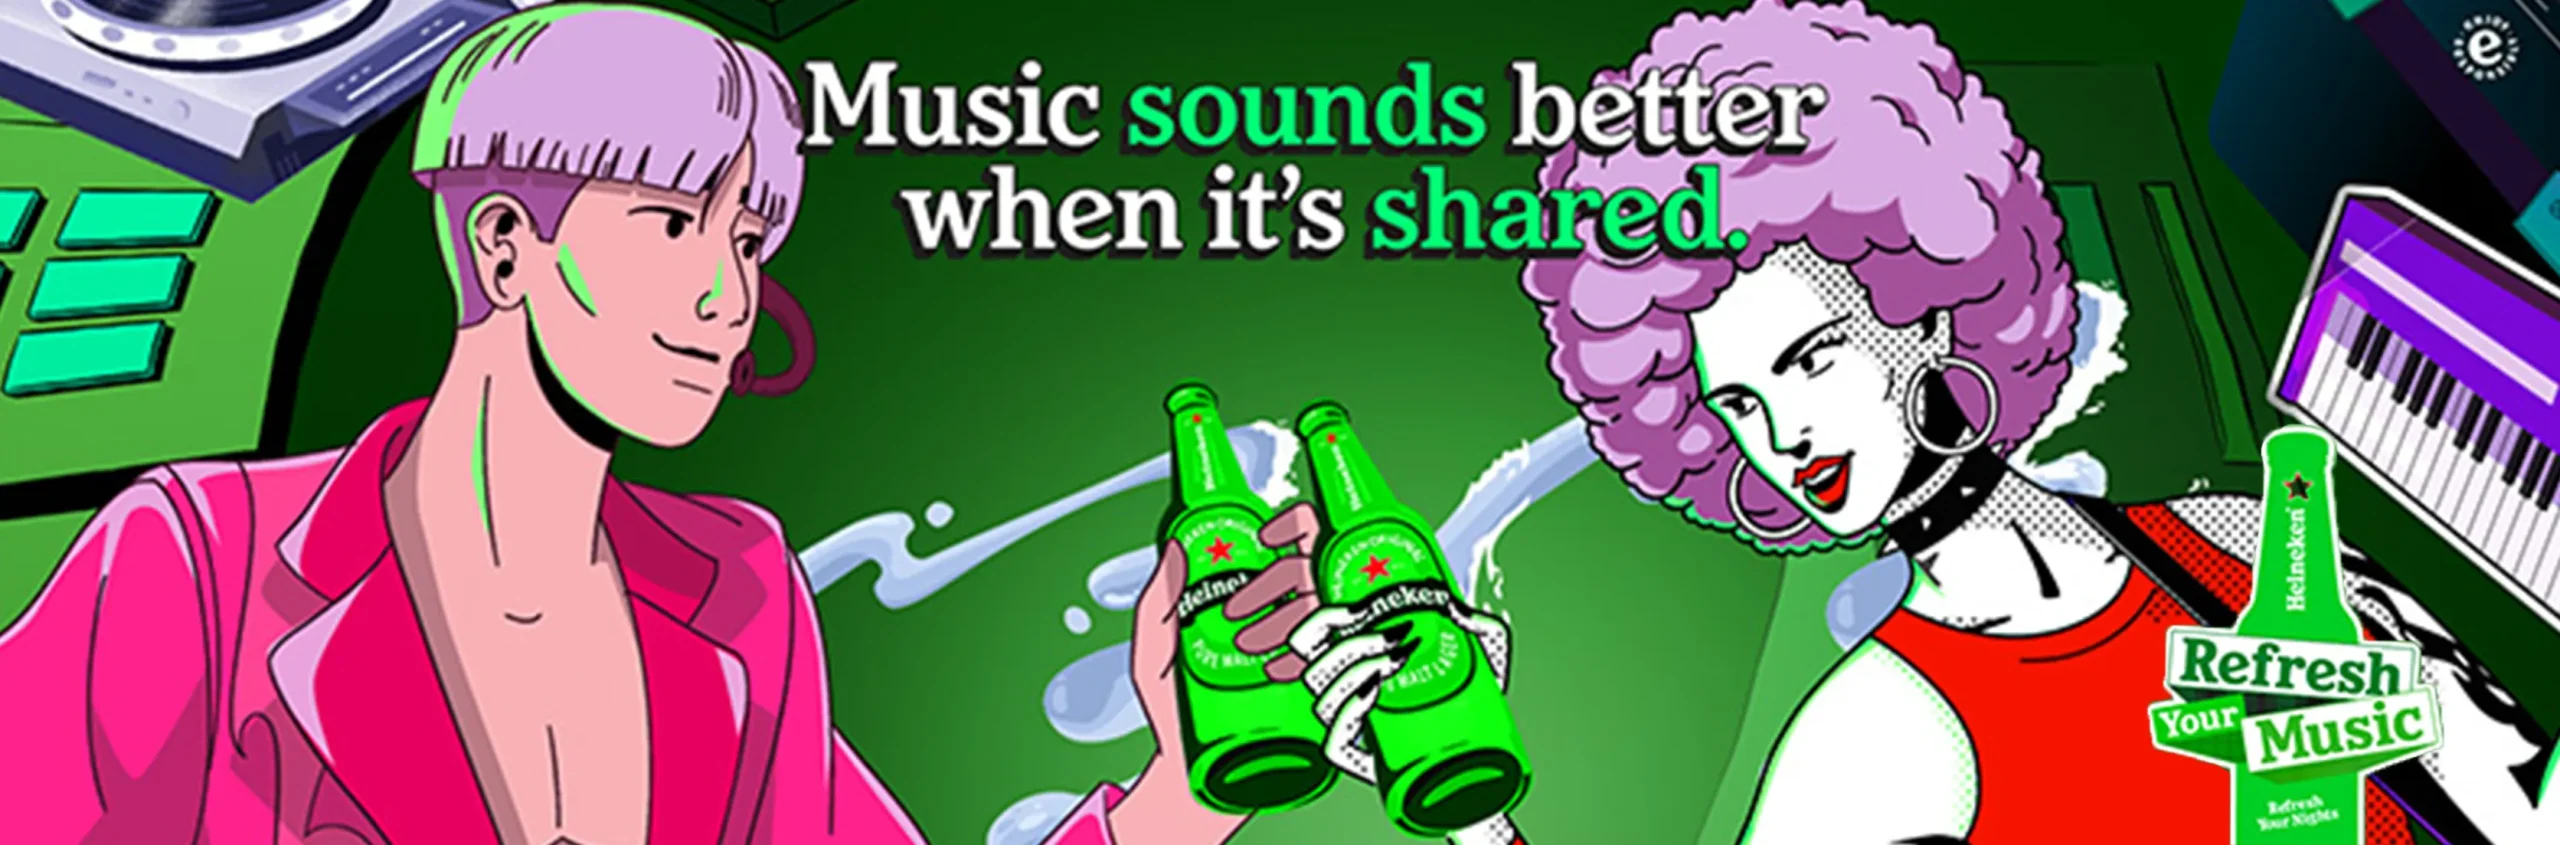 Heineken Refresh Your Music - Banner